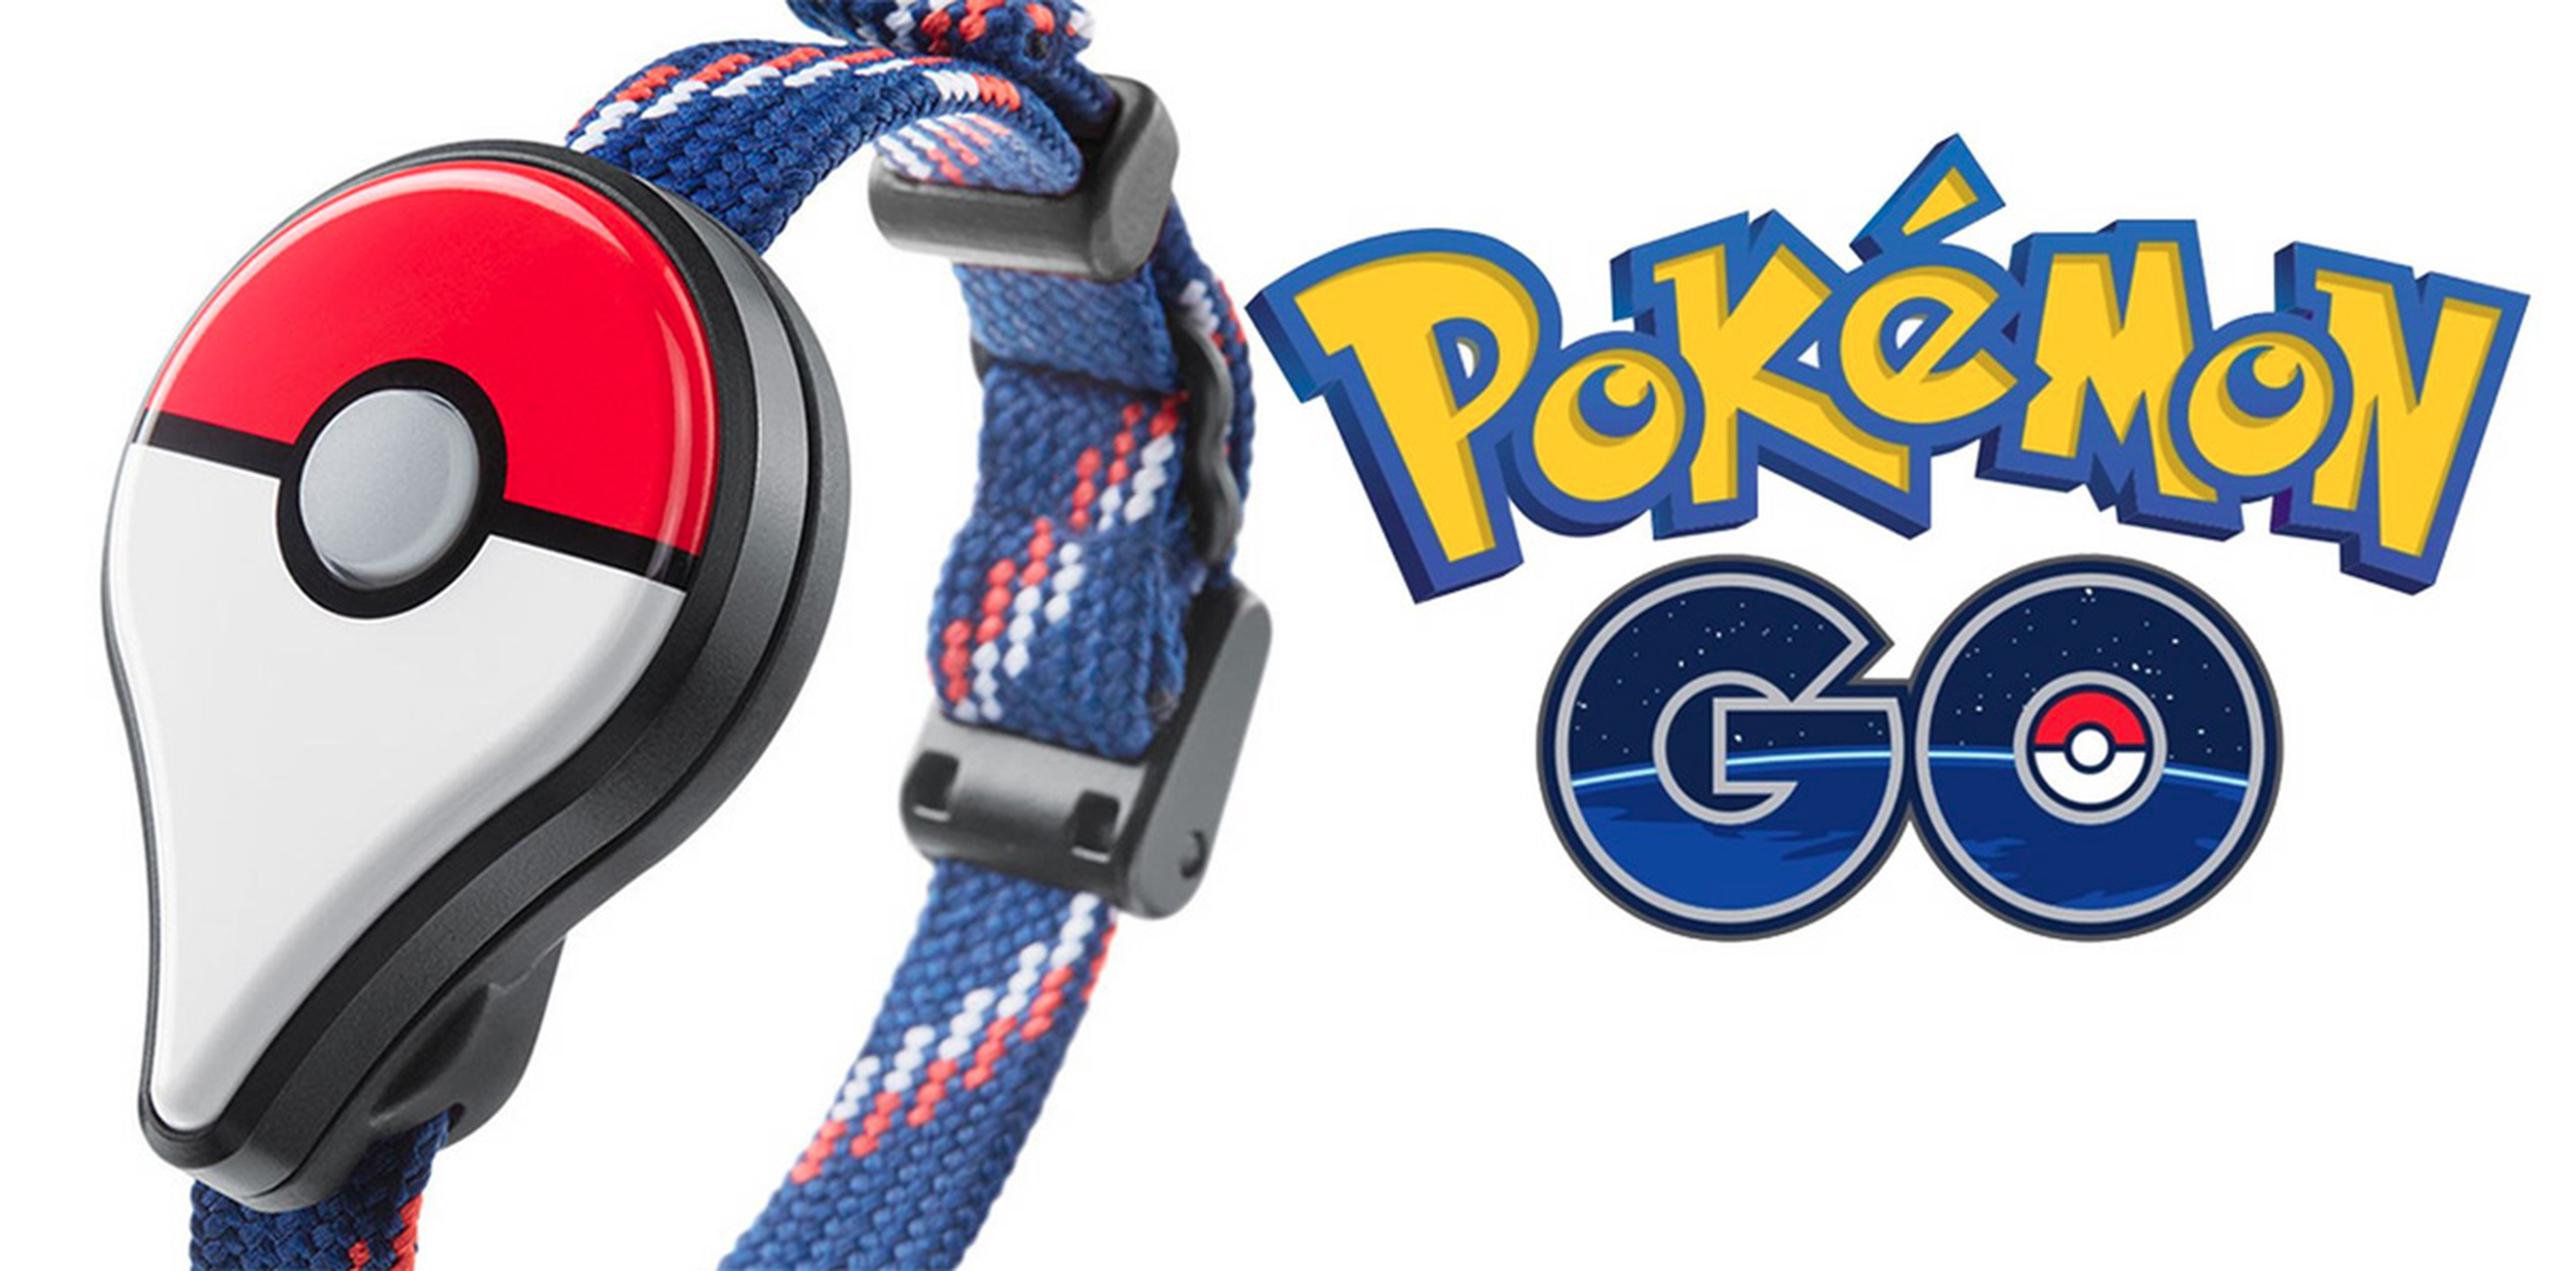 Pokémon GO Plus: para qué sirve y cómo usarla